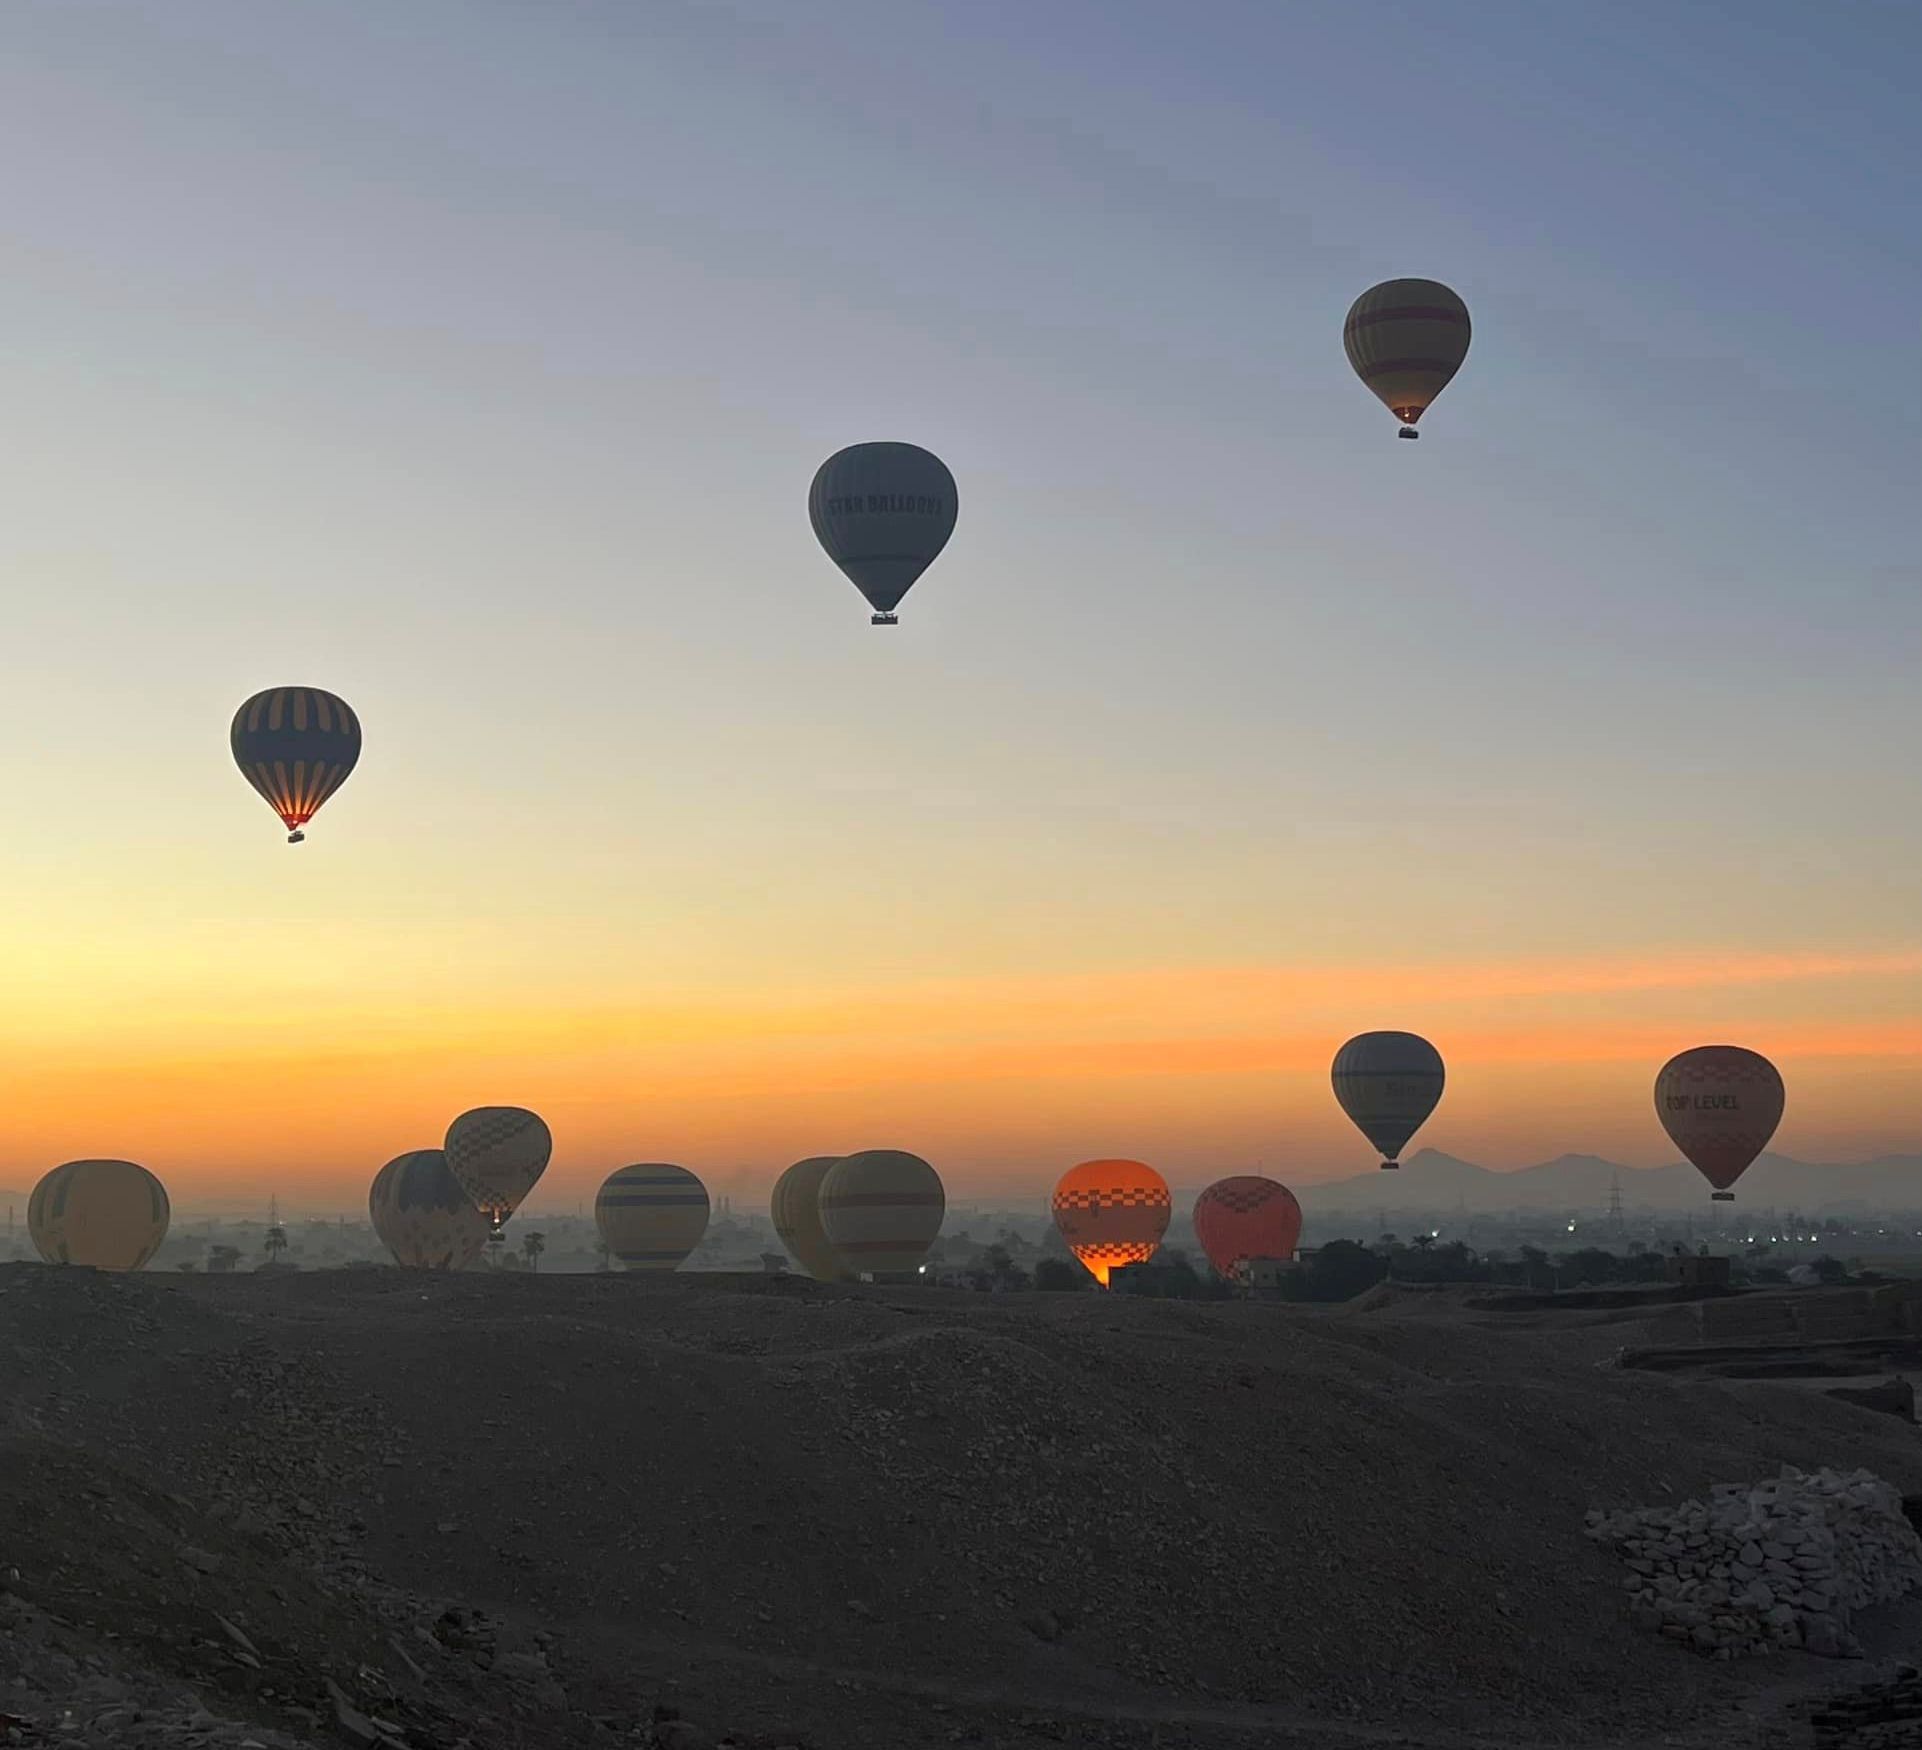 البالونات الطائرة خلال تحليقها بين جبال البر الغربى